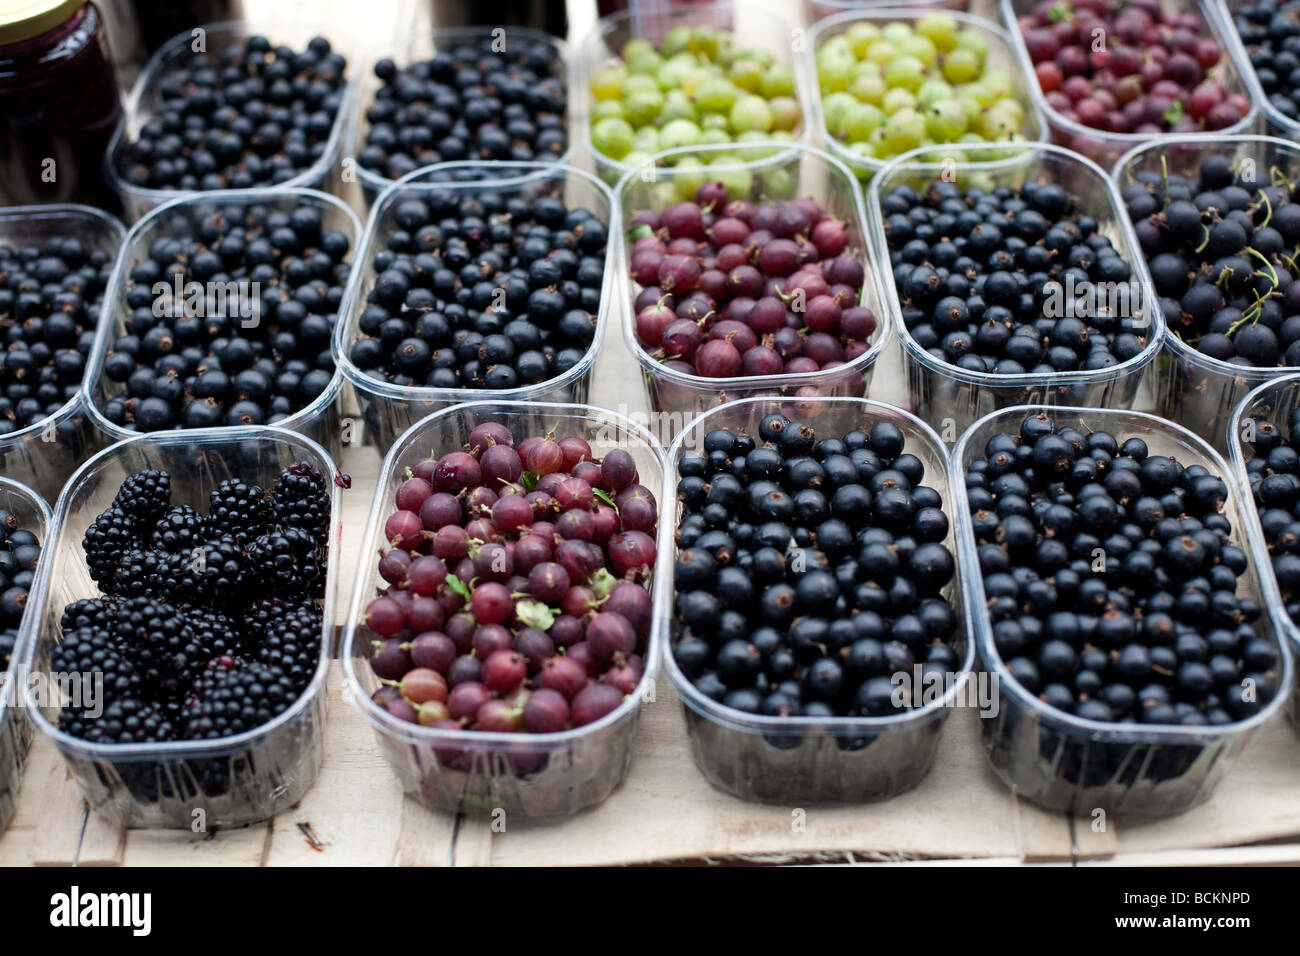 Les fruits cultivés naturellement vendus sur le marché de cassis et groseilles Blackberry dans des contenants en plastique Banque D'Images